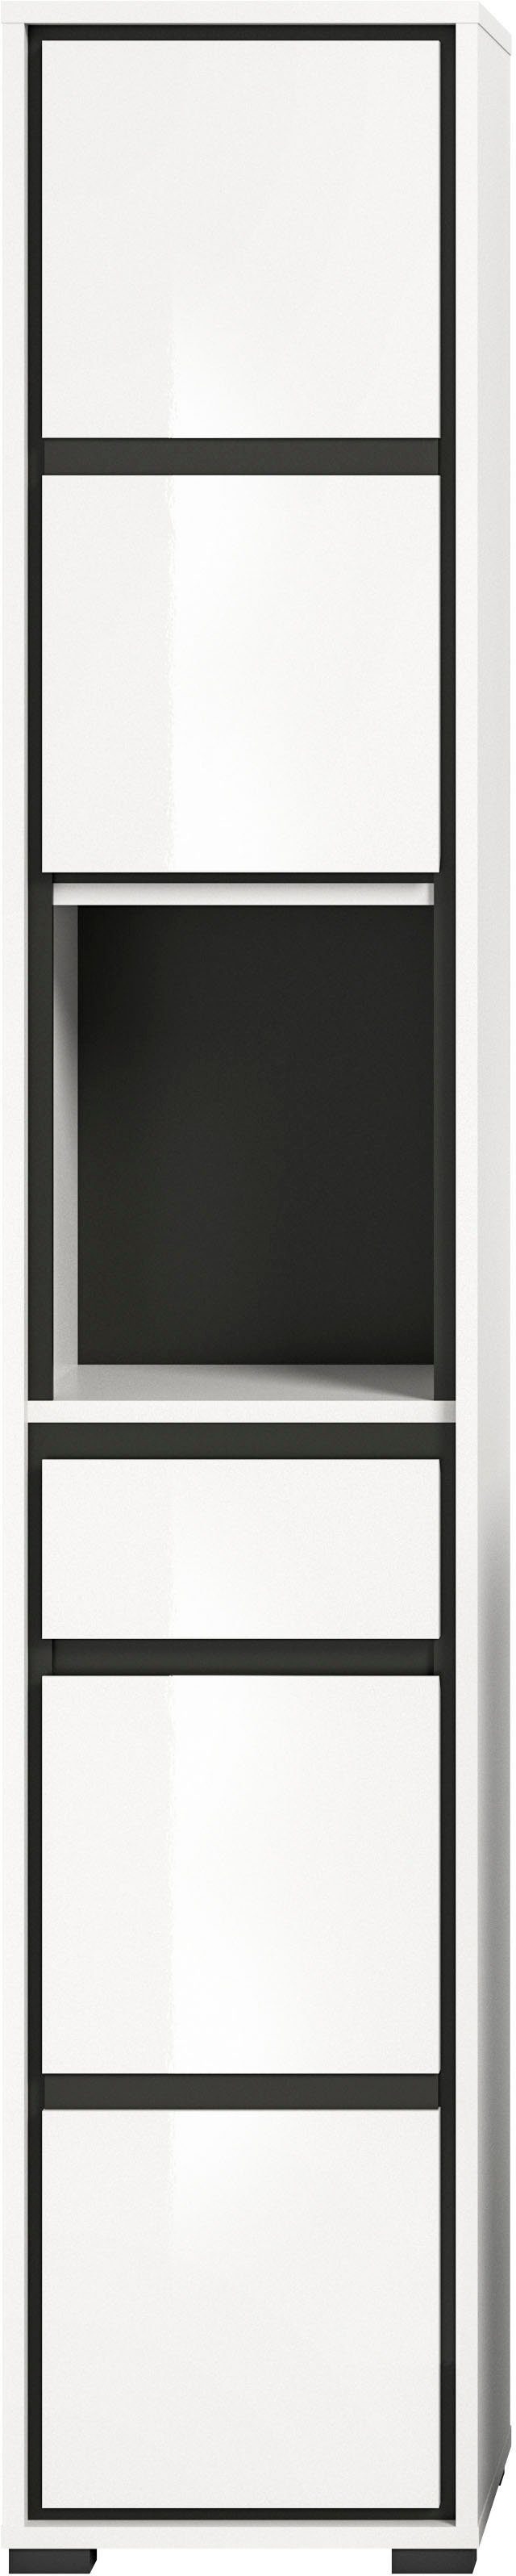 welltime Hochschrank Jaru Badmöbel, 2 Türen, Türanschlag wechselbar, 1 Schubkasten, Breite 35 cm weiß | weiß | Hochschränke